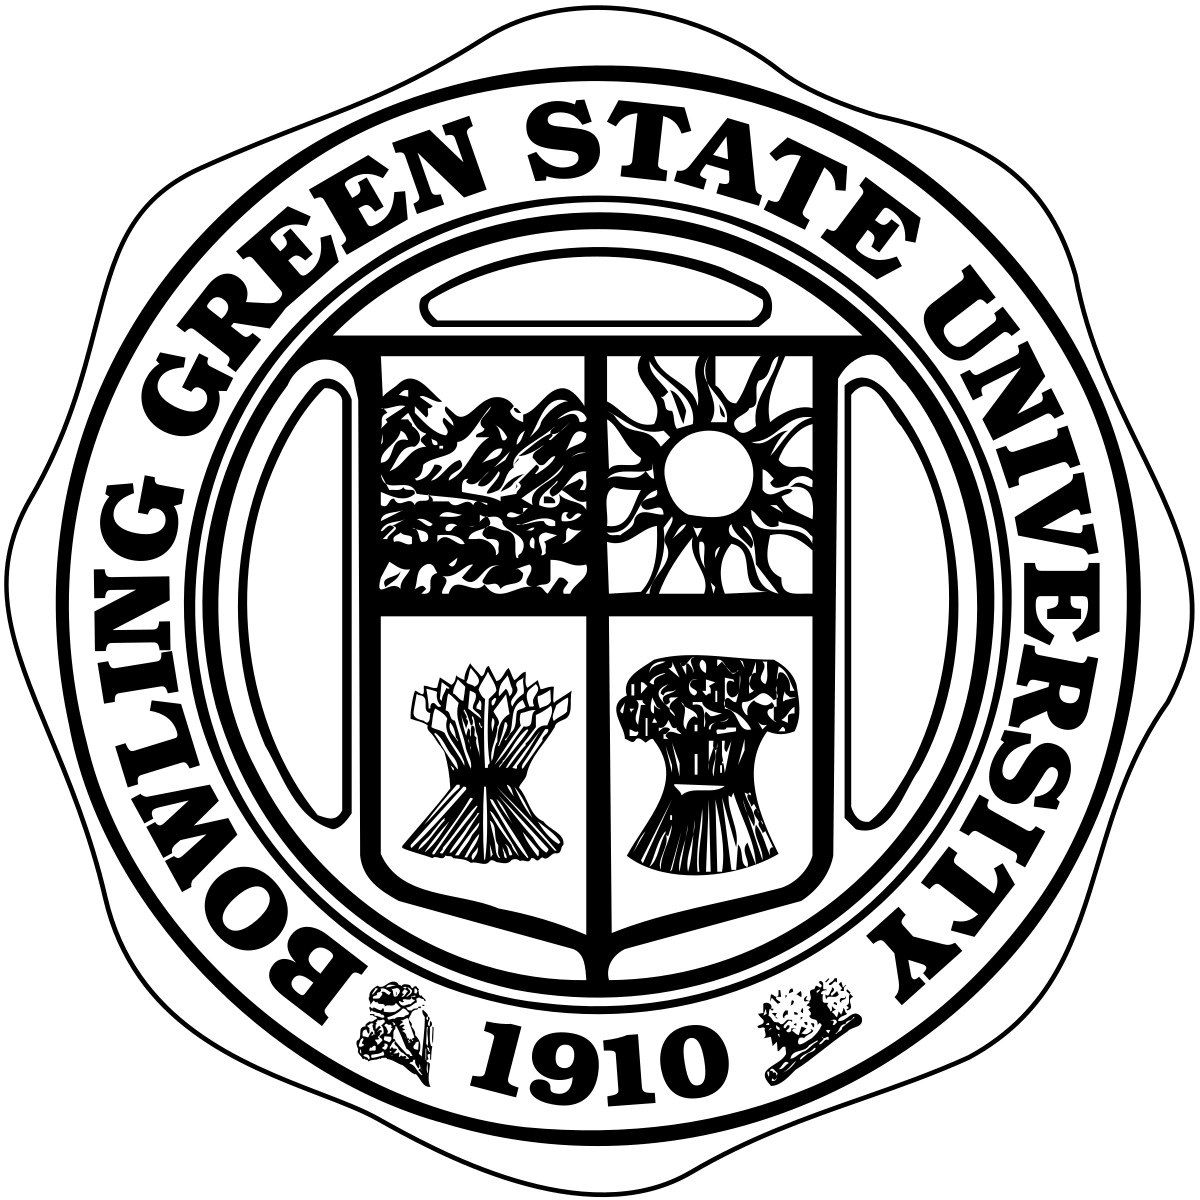 BGSU Logo - Bowling Green State University